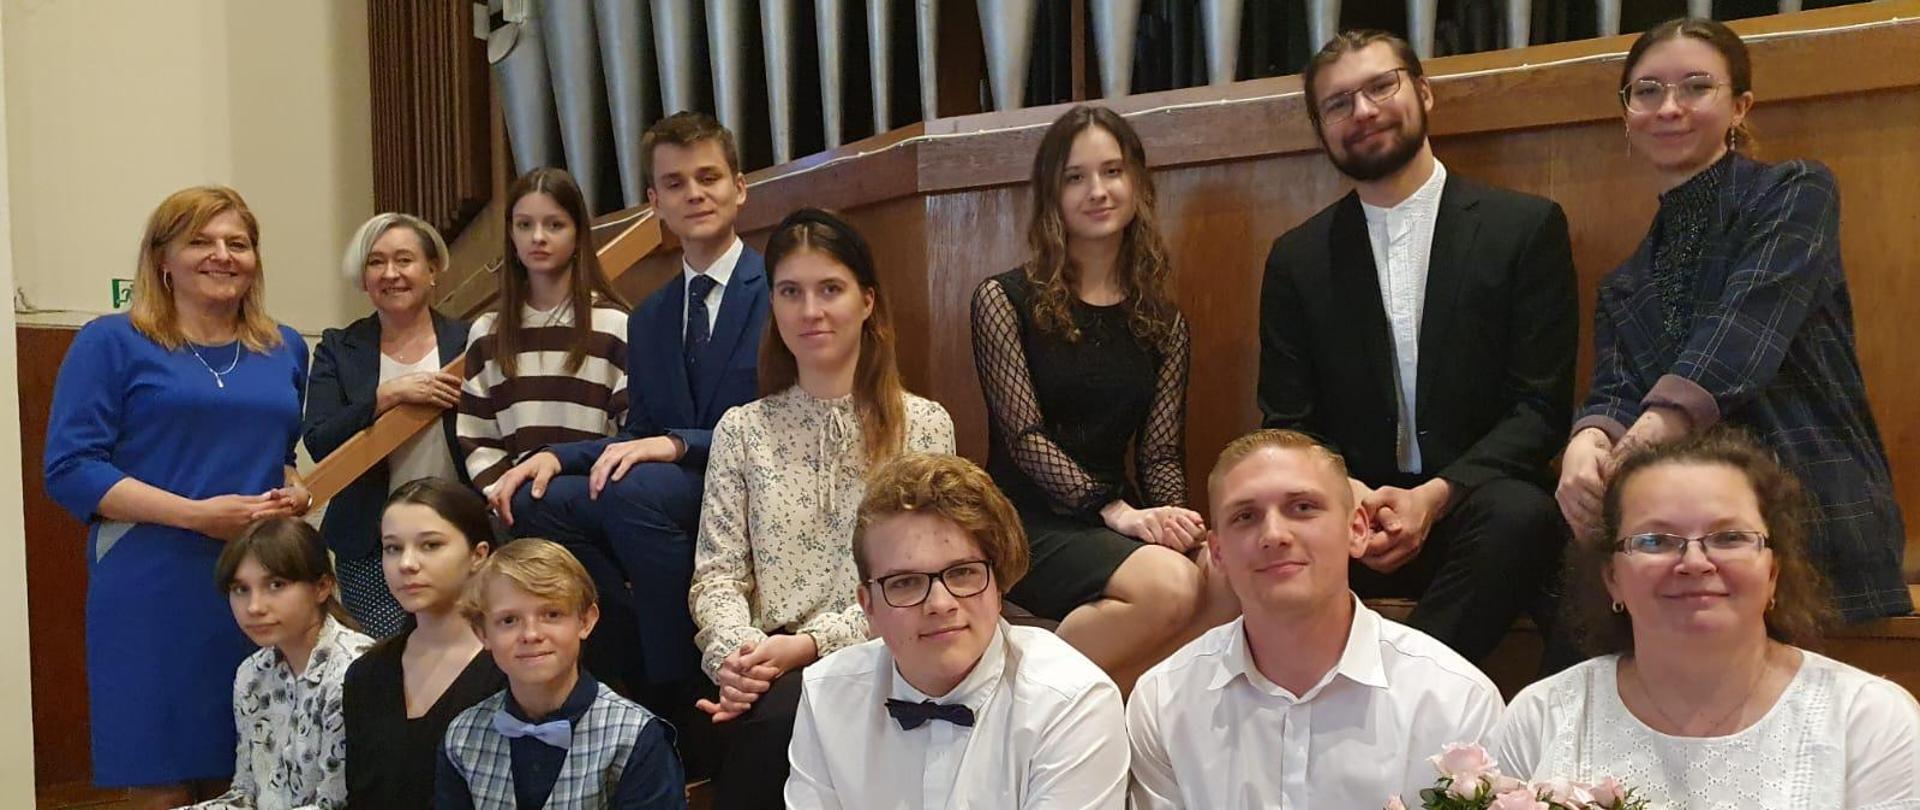 Na zdjęciu grupa młodych artystów, którzy wystąpili podczas koncertu w kościele parafialnym w Gdyni. W tle za nimi piszczałki organowej. W pierwszym rzędzie kobieta w okularach i białej bluzce, która trzyma różyczkę.